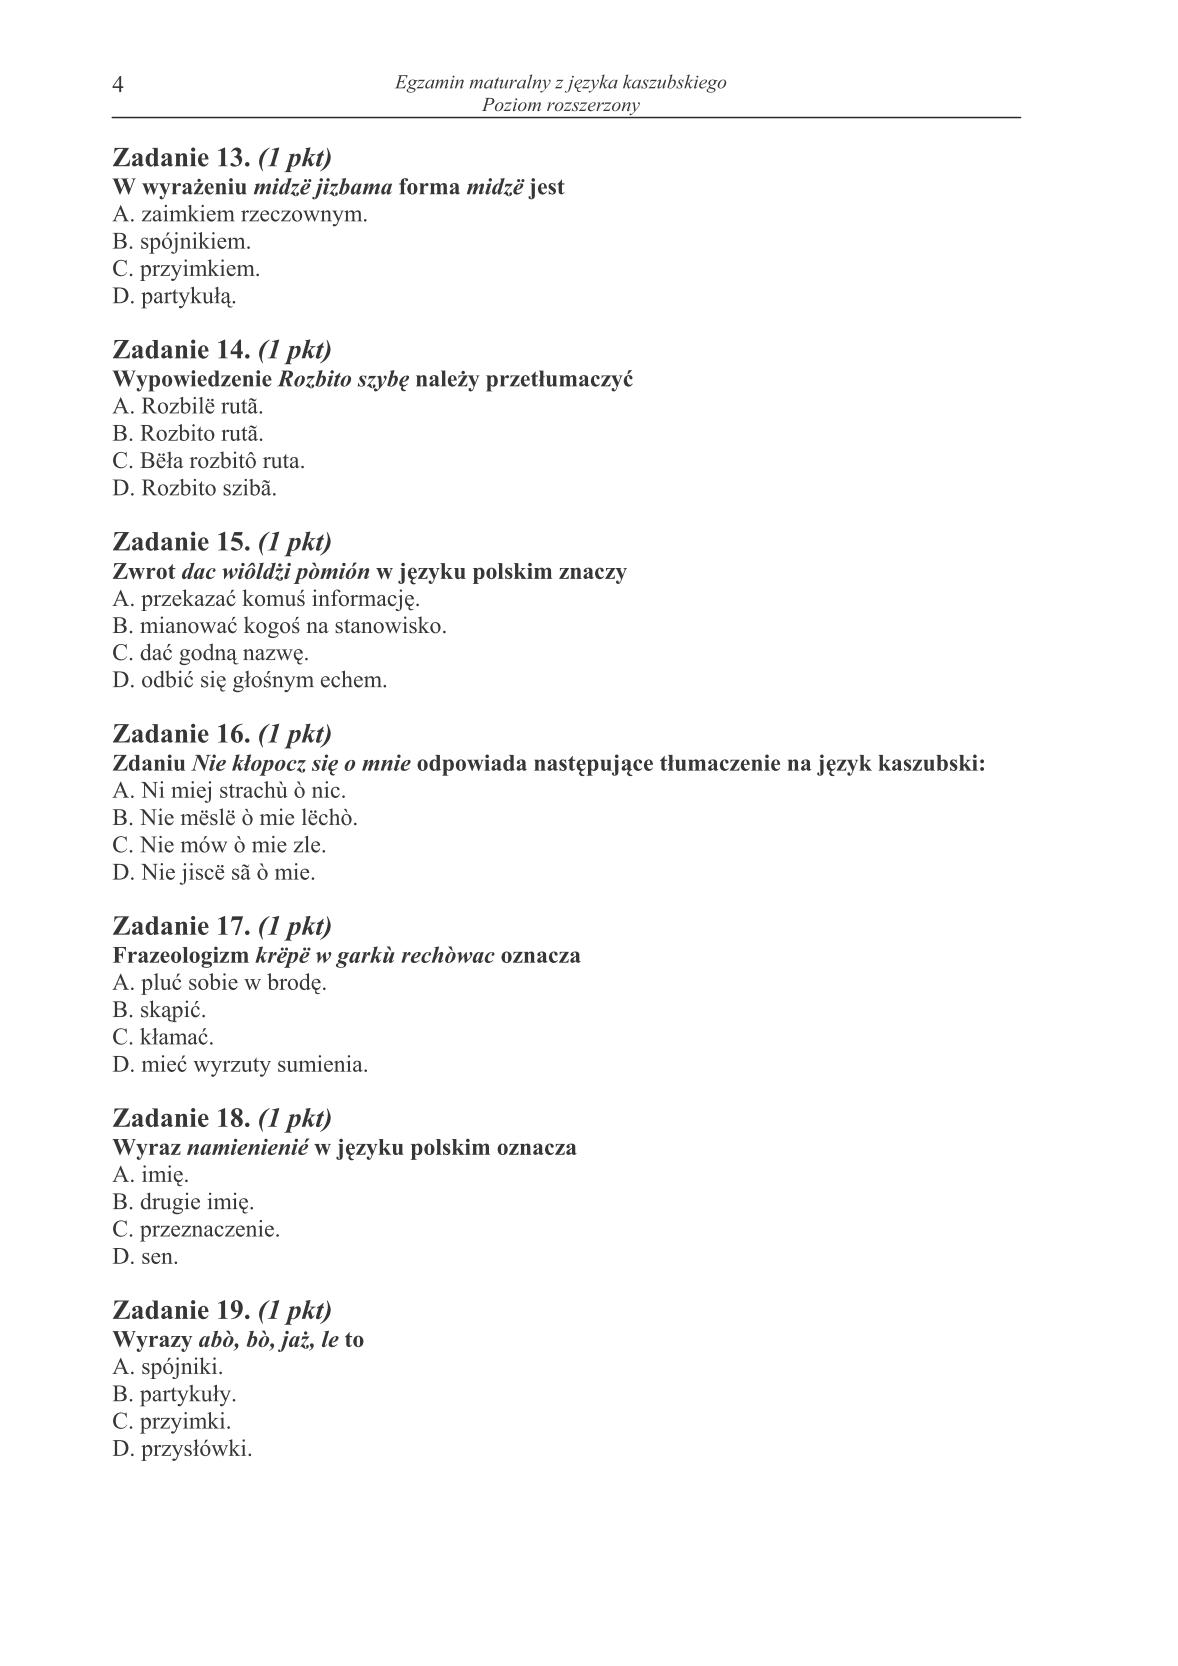 pytania-jezyk-kaszubski-poziom-rozszerzony-matura-2014-str.4